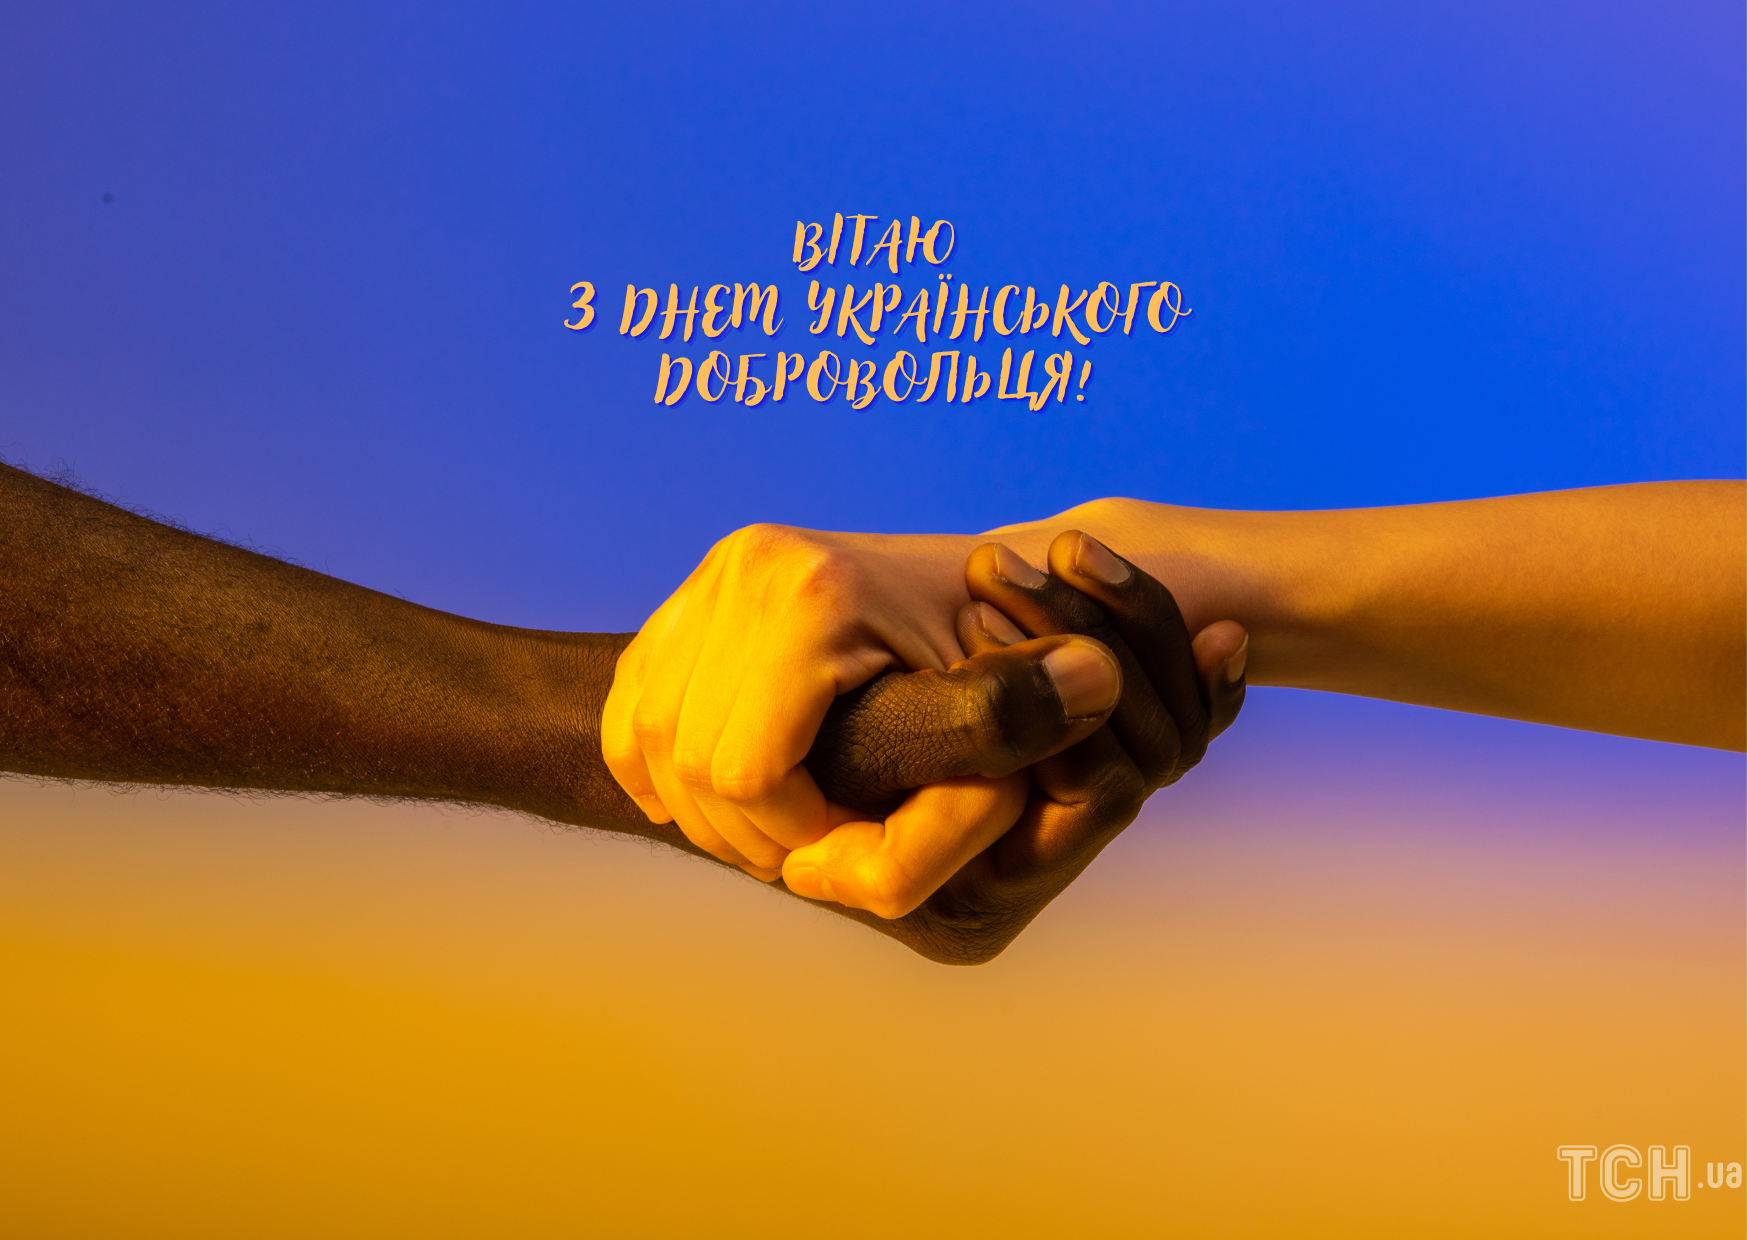 День українського добровольця: картинки / © ТСН.ua